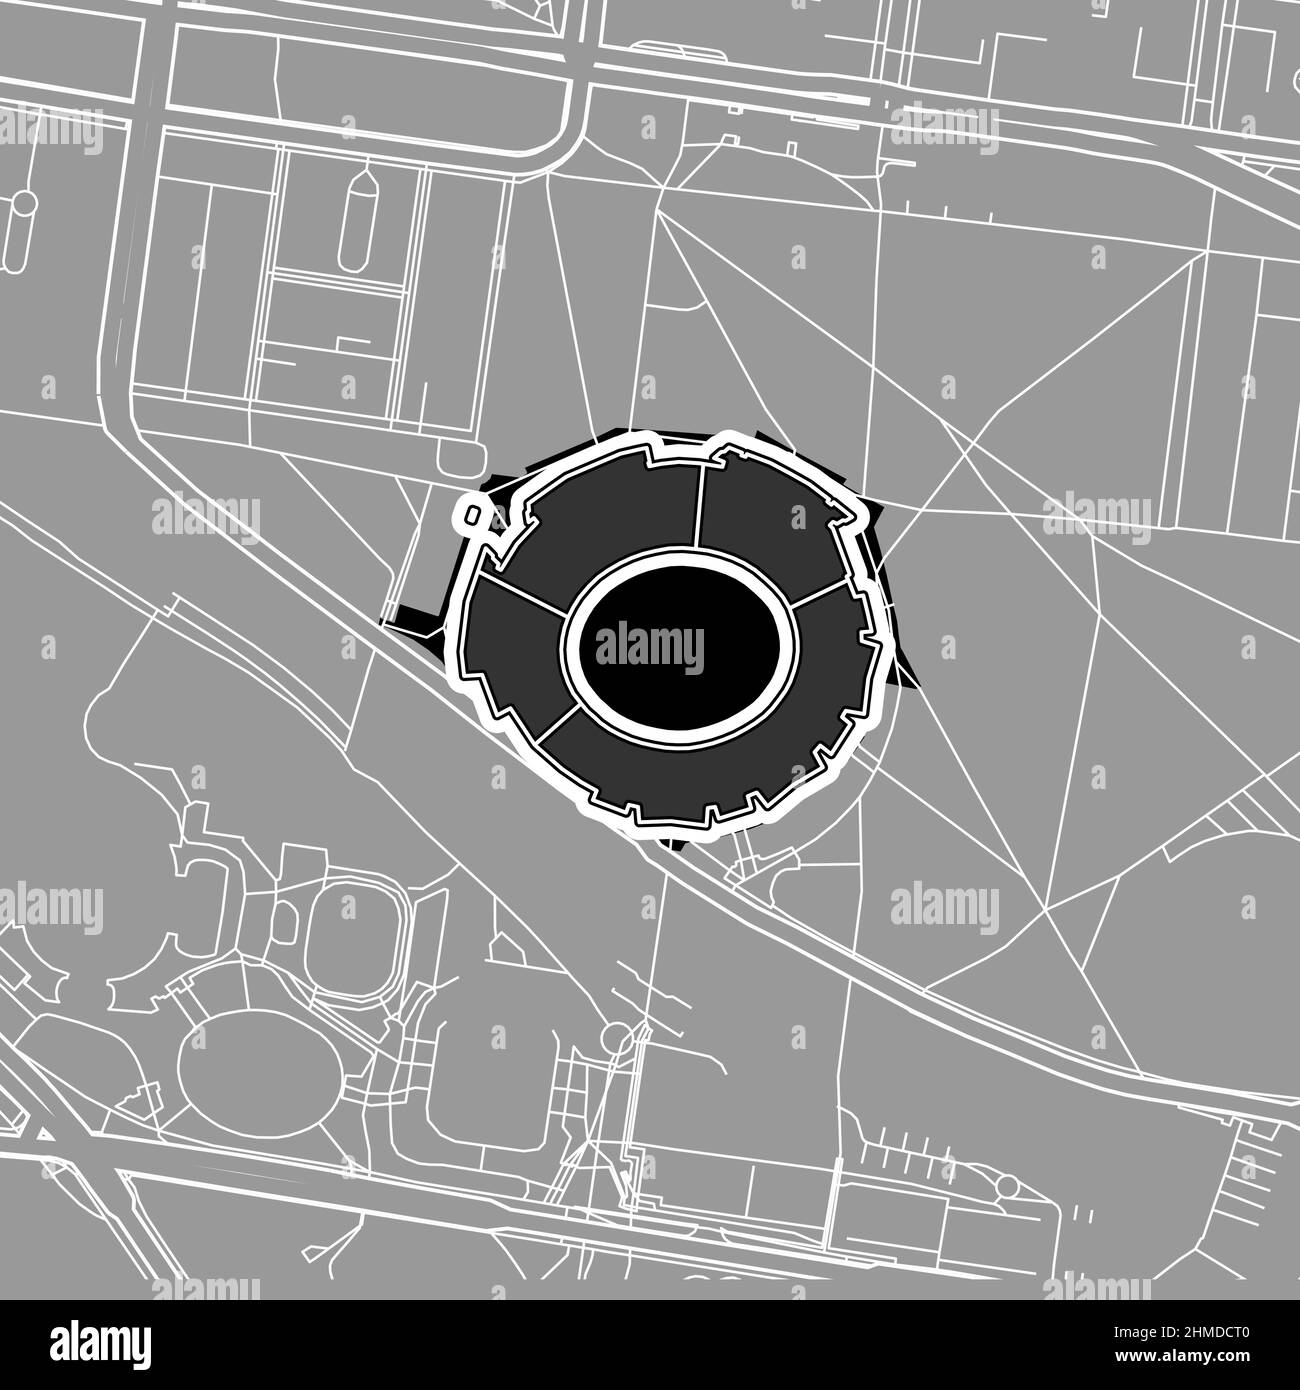 Melbourne, Baseball MLB Stadium, mappa vettoriale. La mappa dello stadio di baseball è stata disegnata con aree bianche e linee per le strade principali, le strade laterali. Illustrazione Vettoriale